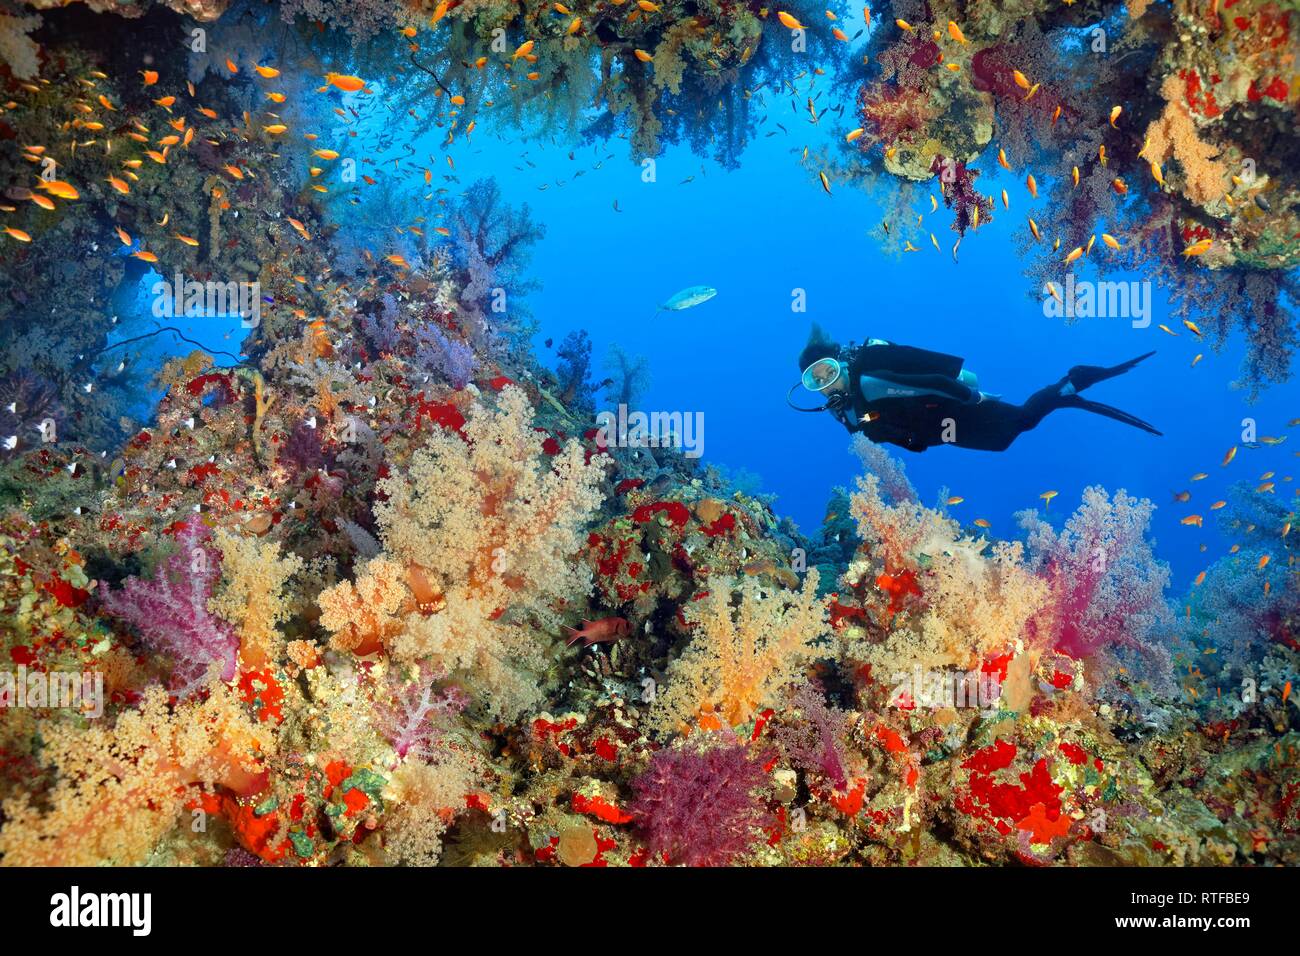 Diver observa avance en arrecifes de coral, densamente cubierto con diversas corales blandos (Alcyonacea), piedra de corales (Hexacorallia) Foto de stock